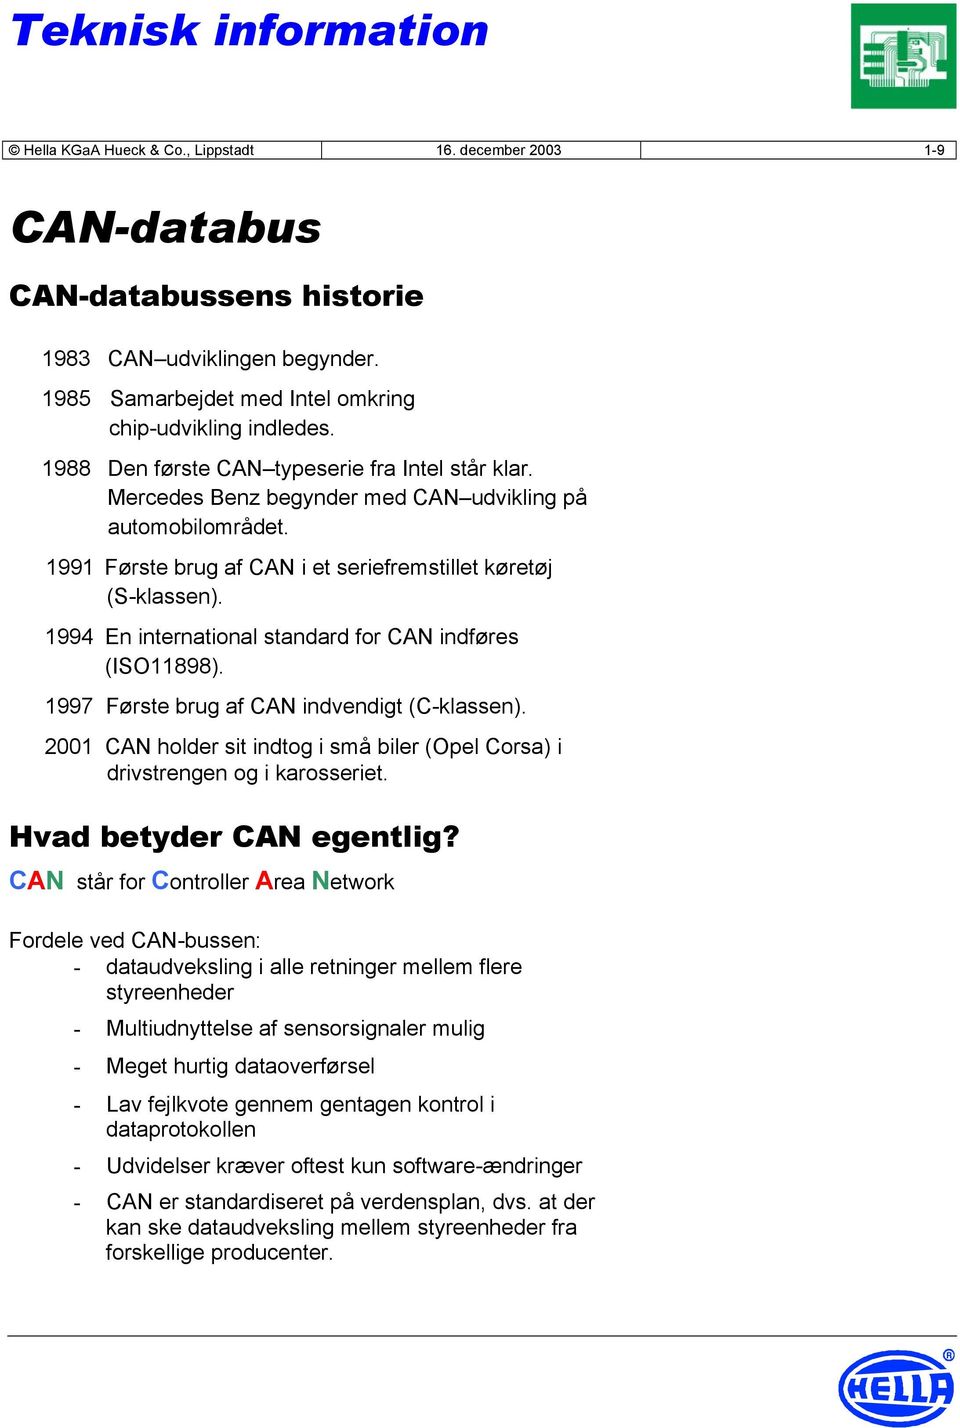 1994 En international standard for CAN indføres (ISO11898). 1997 Første brug af CAN indvendigt (C-klassen). 2001 CAN holder sit indtog i små biler (Opel Corsa) i drivstrengen og i karosseriet.